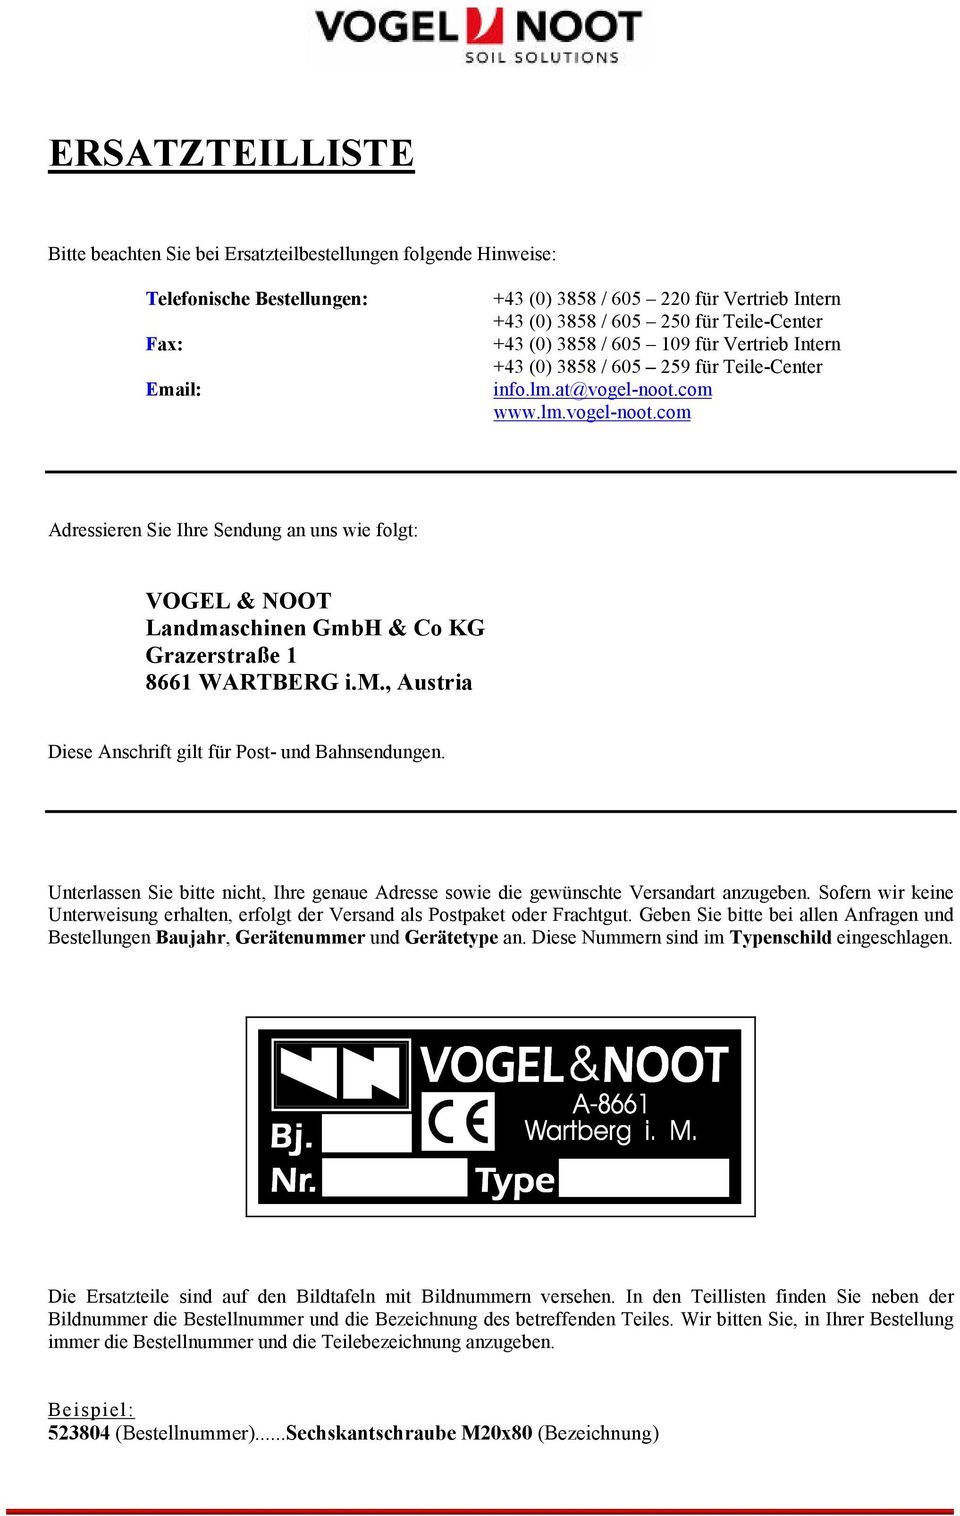 com www.lm.vogel-noot.com Adressieren Sie Ihre Sendung an uns wie folgt: VOGEL & NOOT Landmaschinen GmbH & Co KG Grazerstraße 1 8661 WARTBERG i.m., Austria Diese Anschrift gilt für Post- und Bahnsendungen.